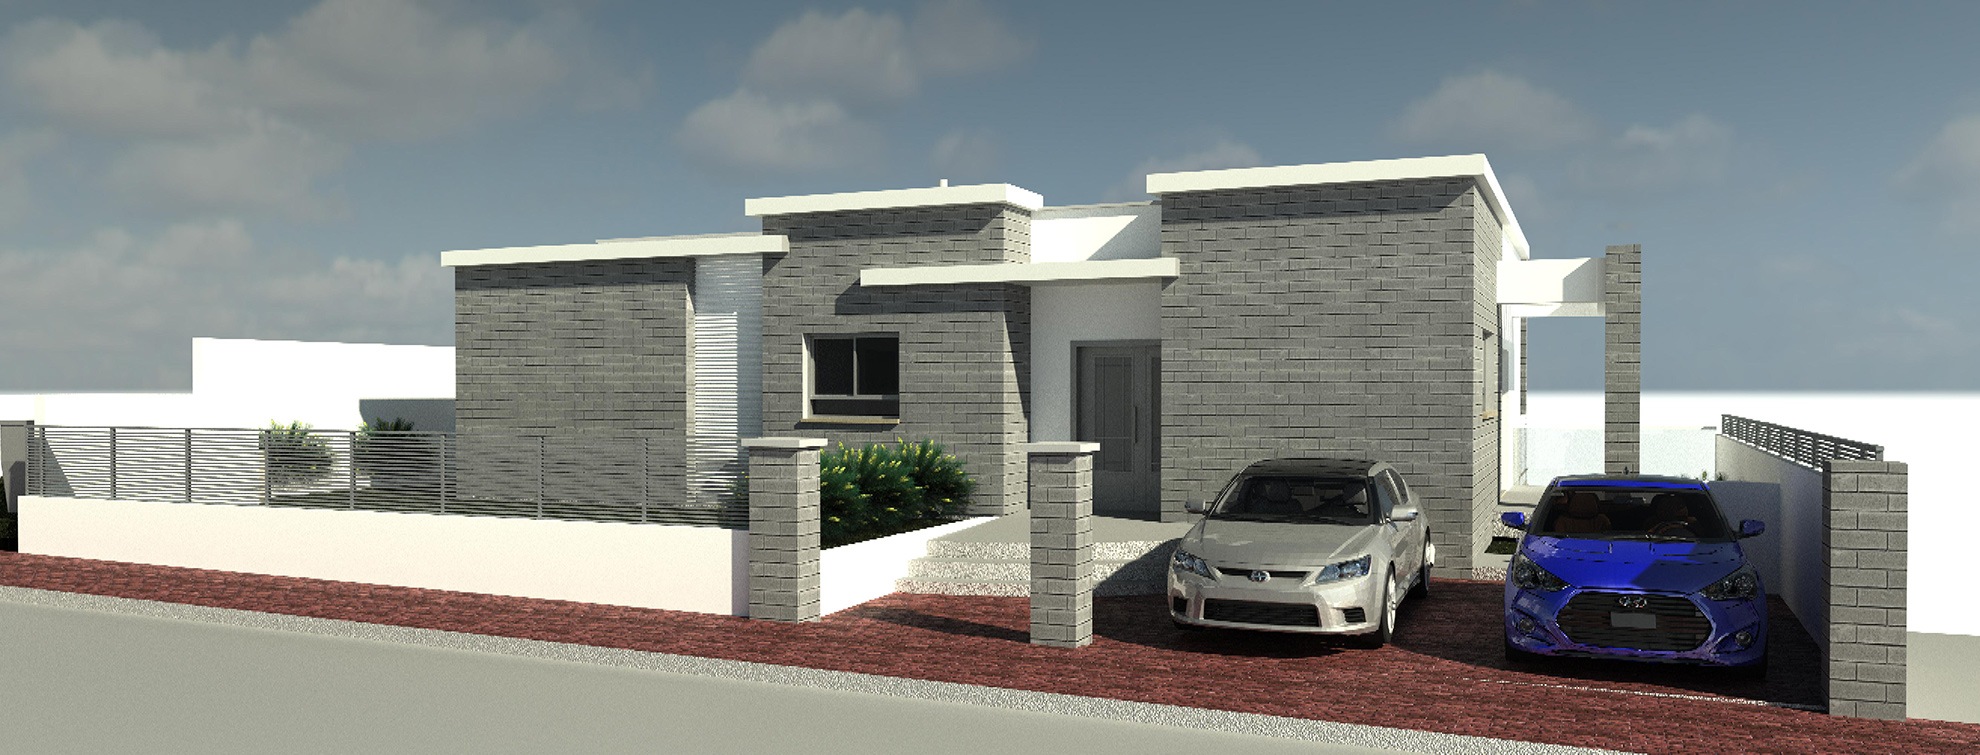 תמונת פרויקט תכנון ועיצוב בית פרטי בשכונת האקליפטוס בטבריה